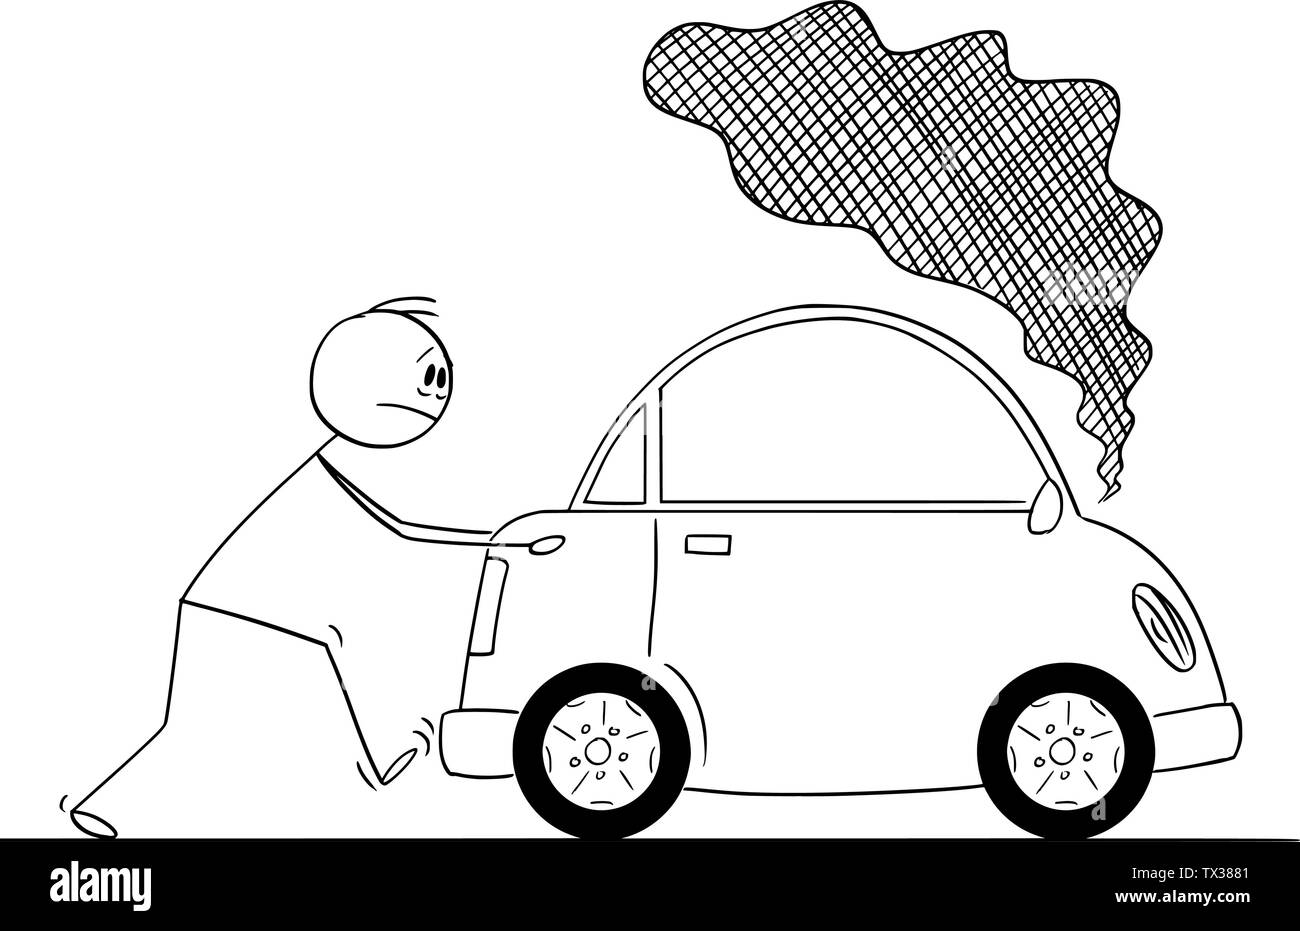 Vector cartoon stick figura disegno illustrazione concettuale dell'uomo spingendo broken auto con fumo proveniente dal motore. Illustrazione Vettoriale